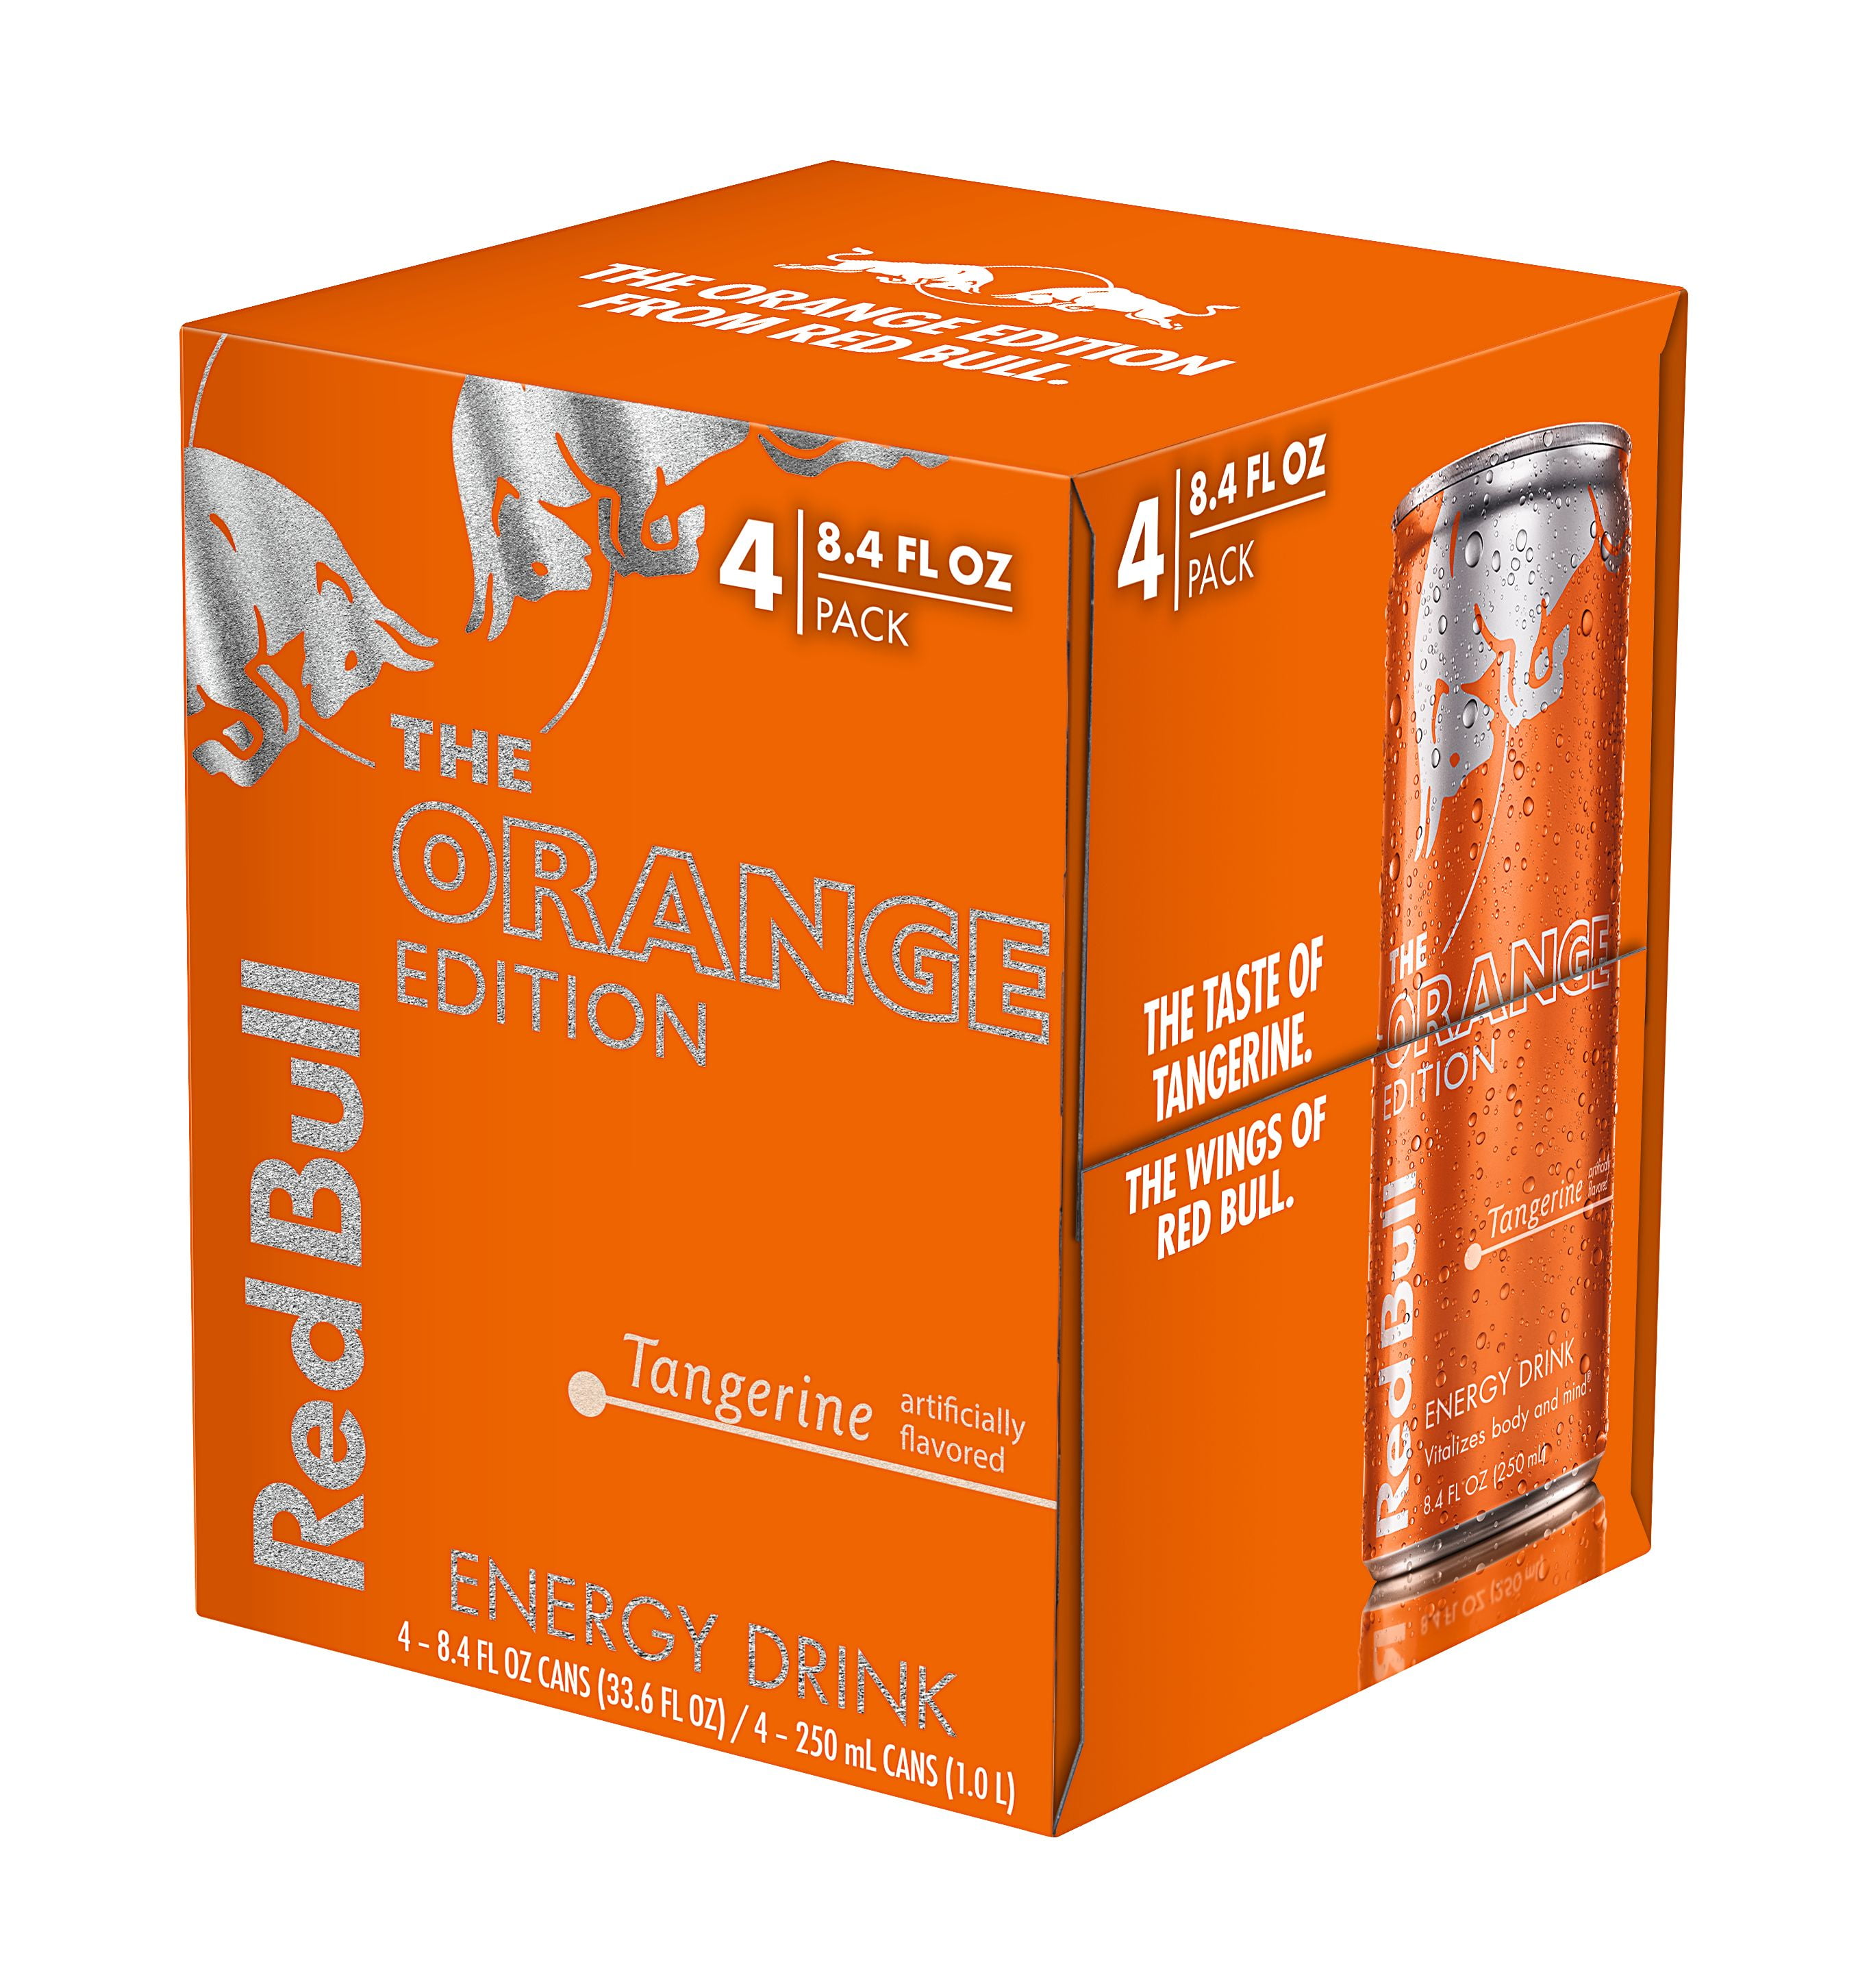 placere fætter Sparsommelig 4 Cans) Red Bull Energy Drink, Tangerine, 8.4 Fl Oz, Orange Edition Energy  Spark Energy Drink - Walmart.com